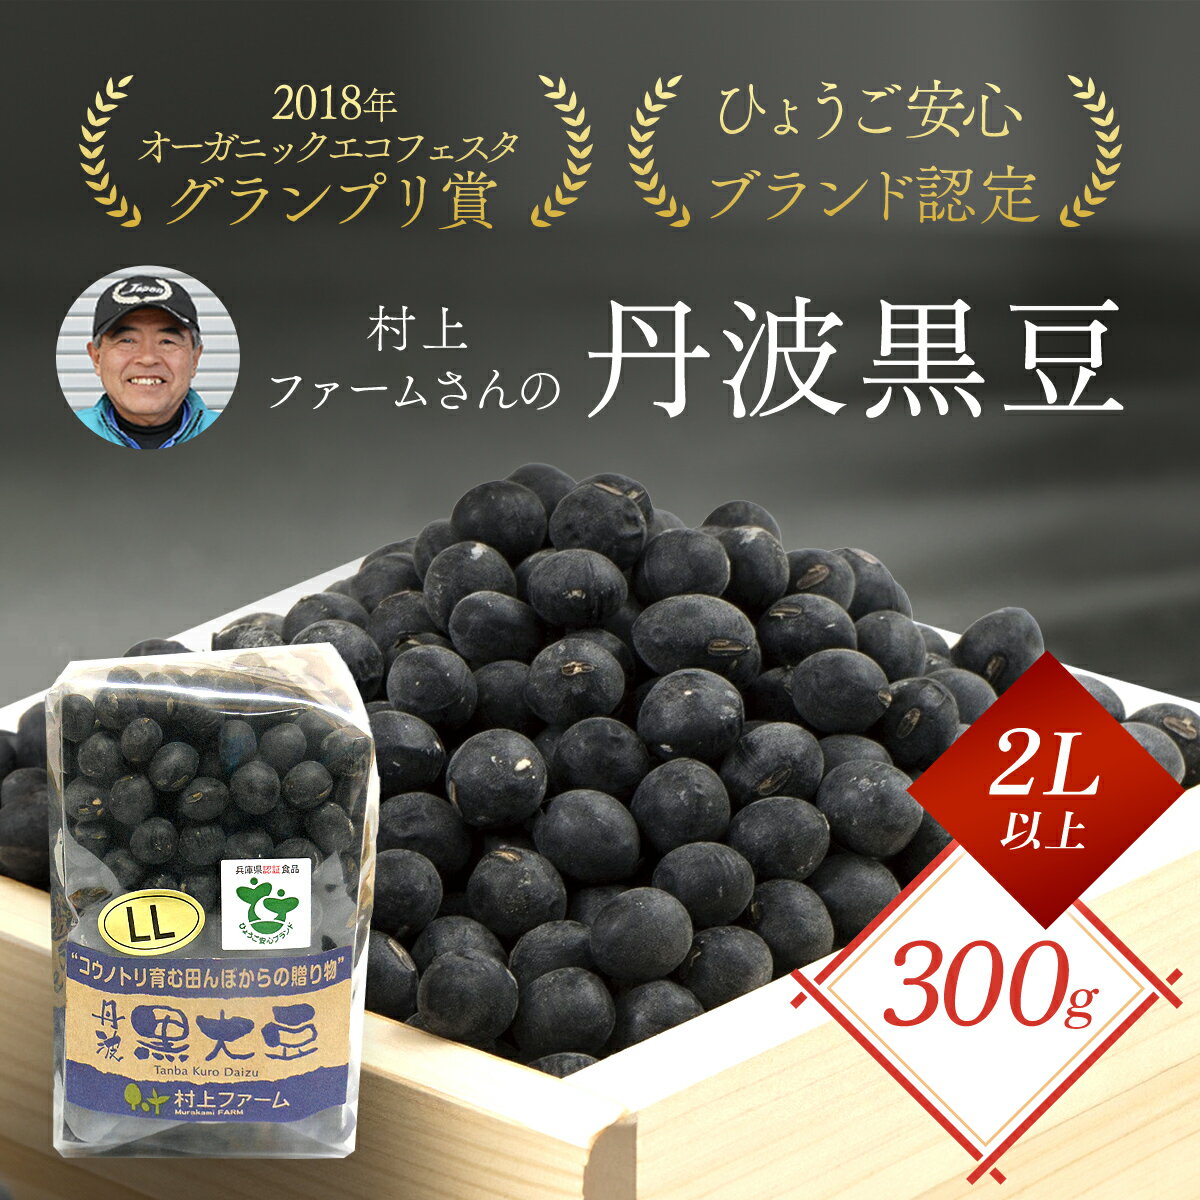 【ふるさと納税】大粒『丹波黒大豆』 300g (2L以上) 